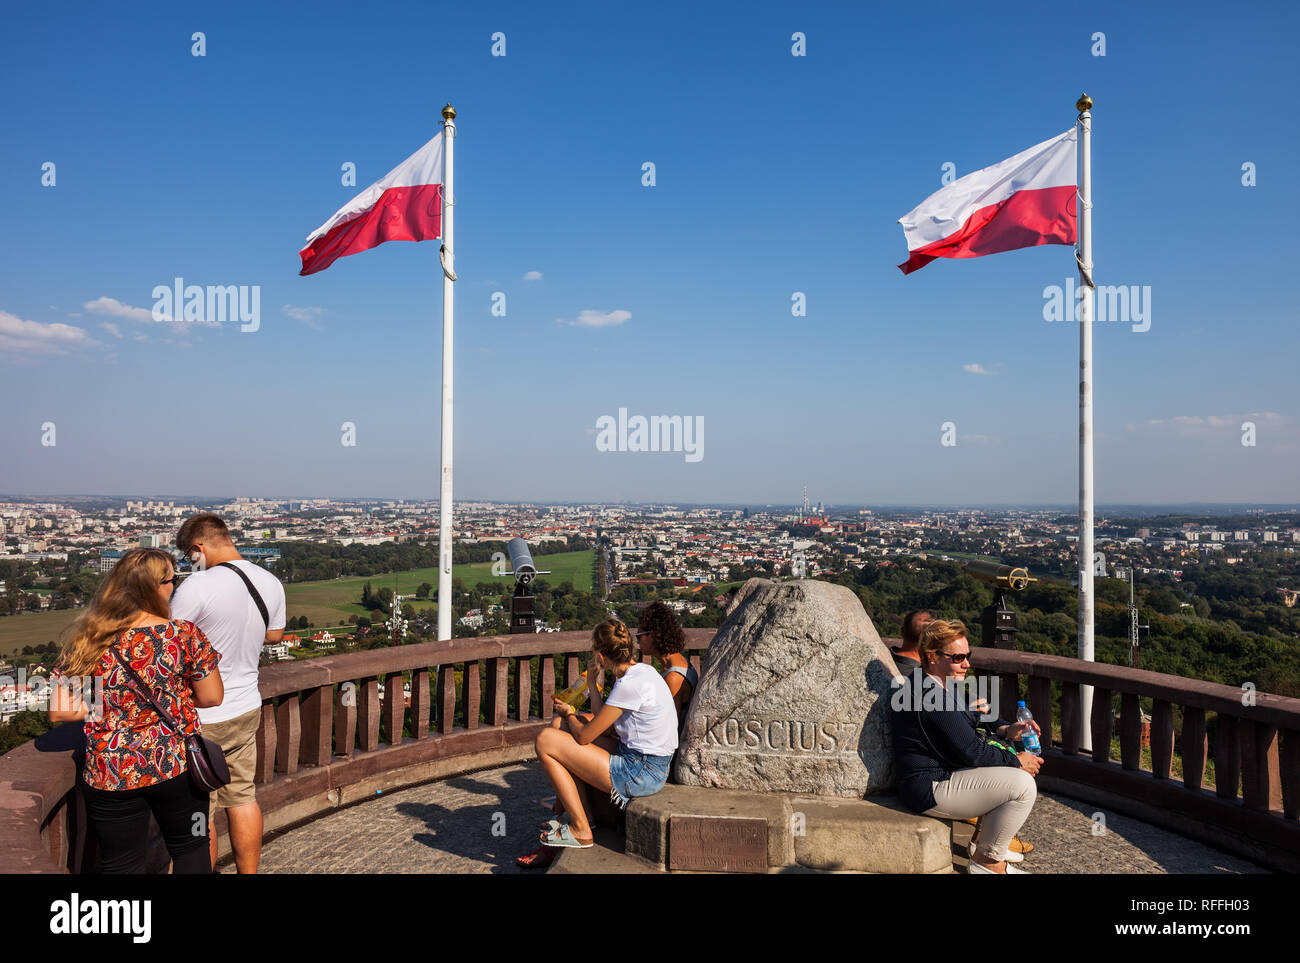 Les gens en haut de la butte de Kosciuszko dans ville de Cracovie, Pologne, ville monument à partir de 1823, consacrée à l'Amérique et héros militaire polonais Tadeusz Kosci Banque D'Images